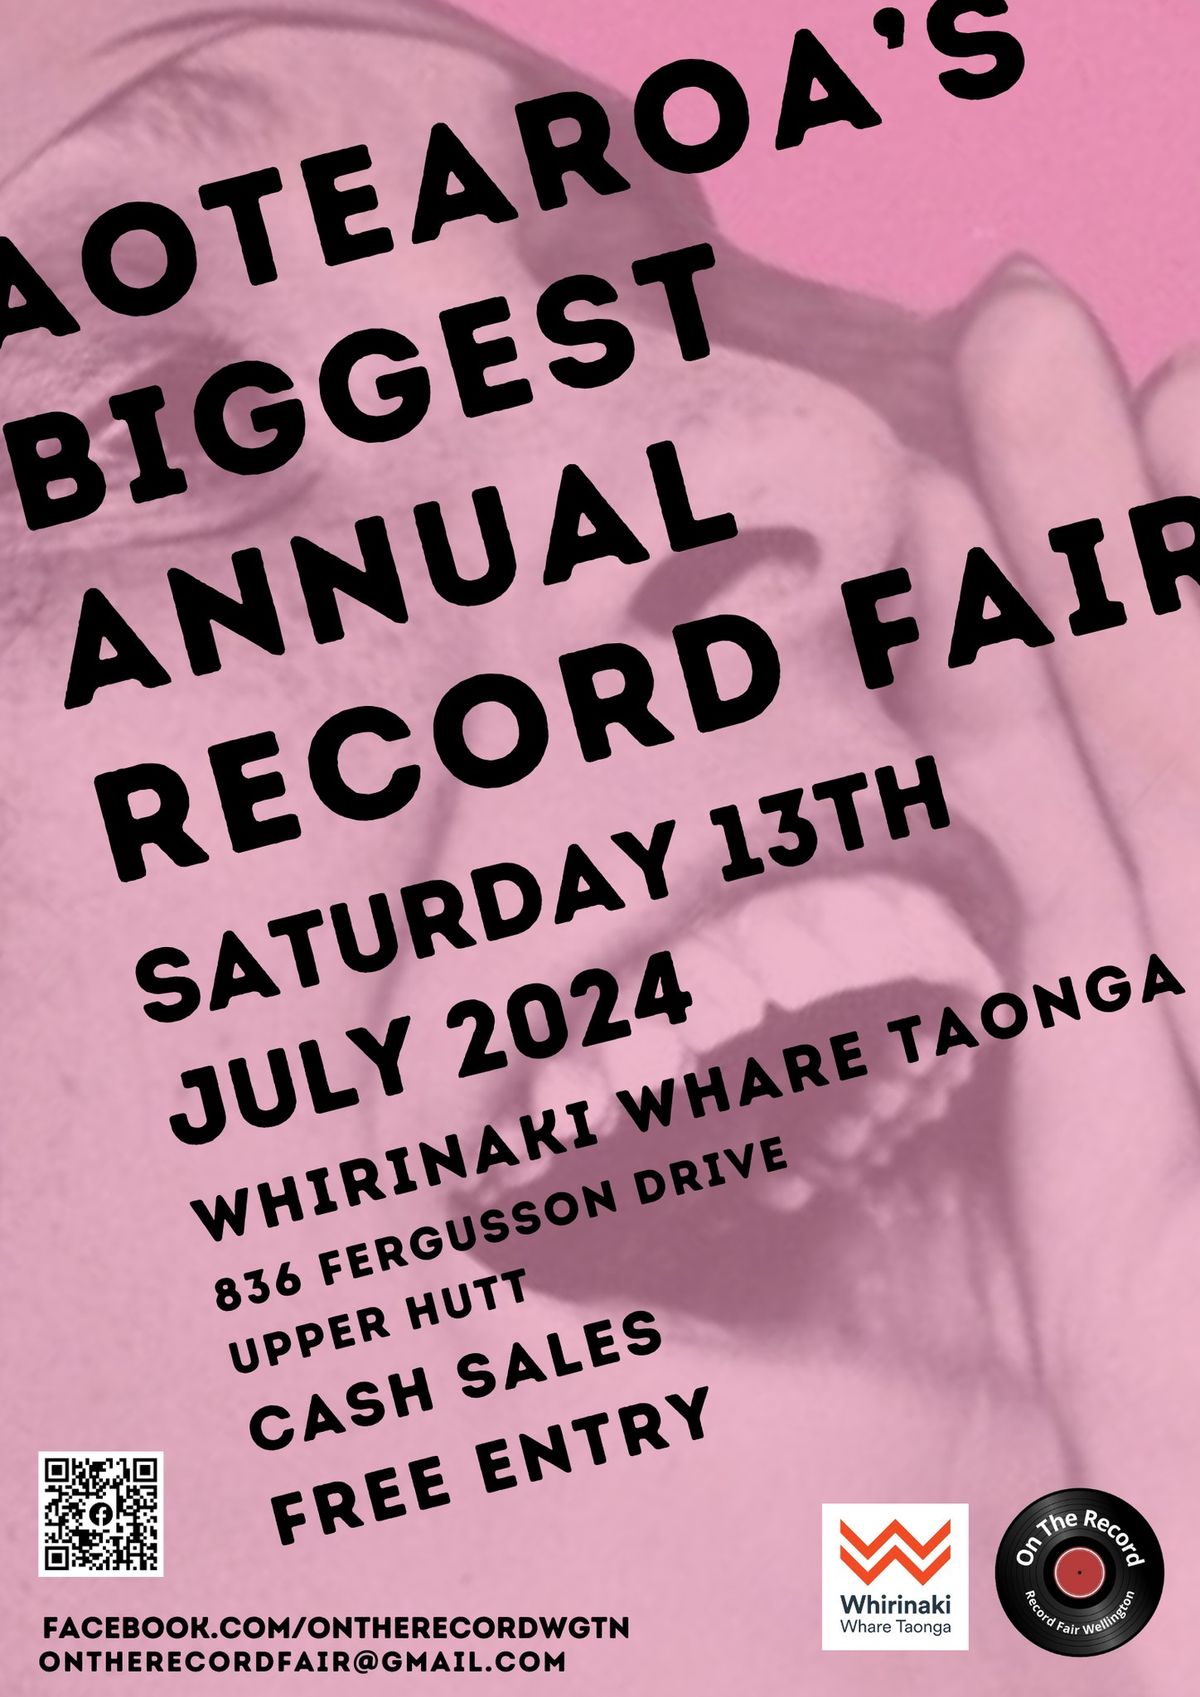 Aotearoa's BIGGEST Annual Record Fair